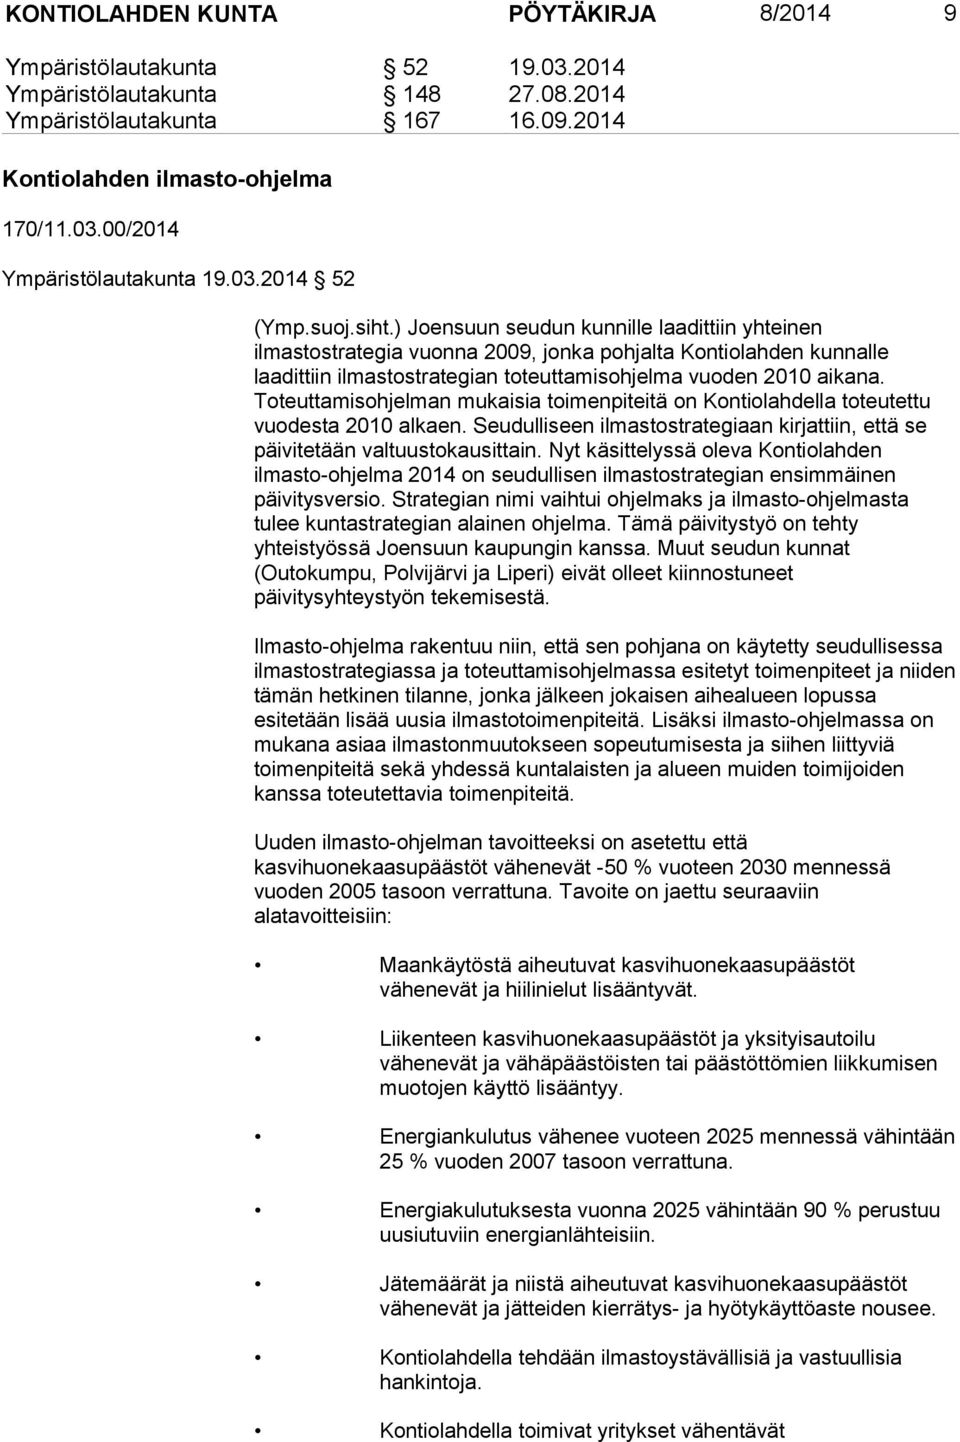 ) Joensuun seudun kunnille laadittiin yhteinen ilmastostrategia vuonna 2009, jonka pohjalta Kontiolahden kunnalle laadittiin ilmastostrategian toteuttamisohjelma vuoden 2010 aikana.